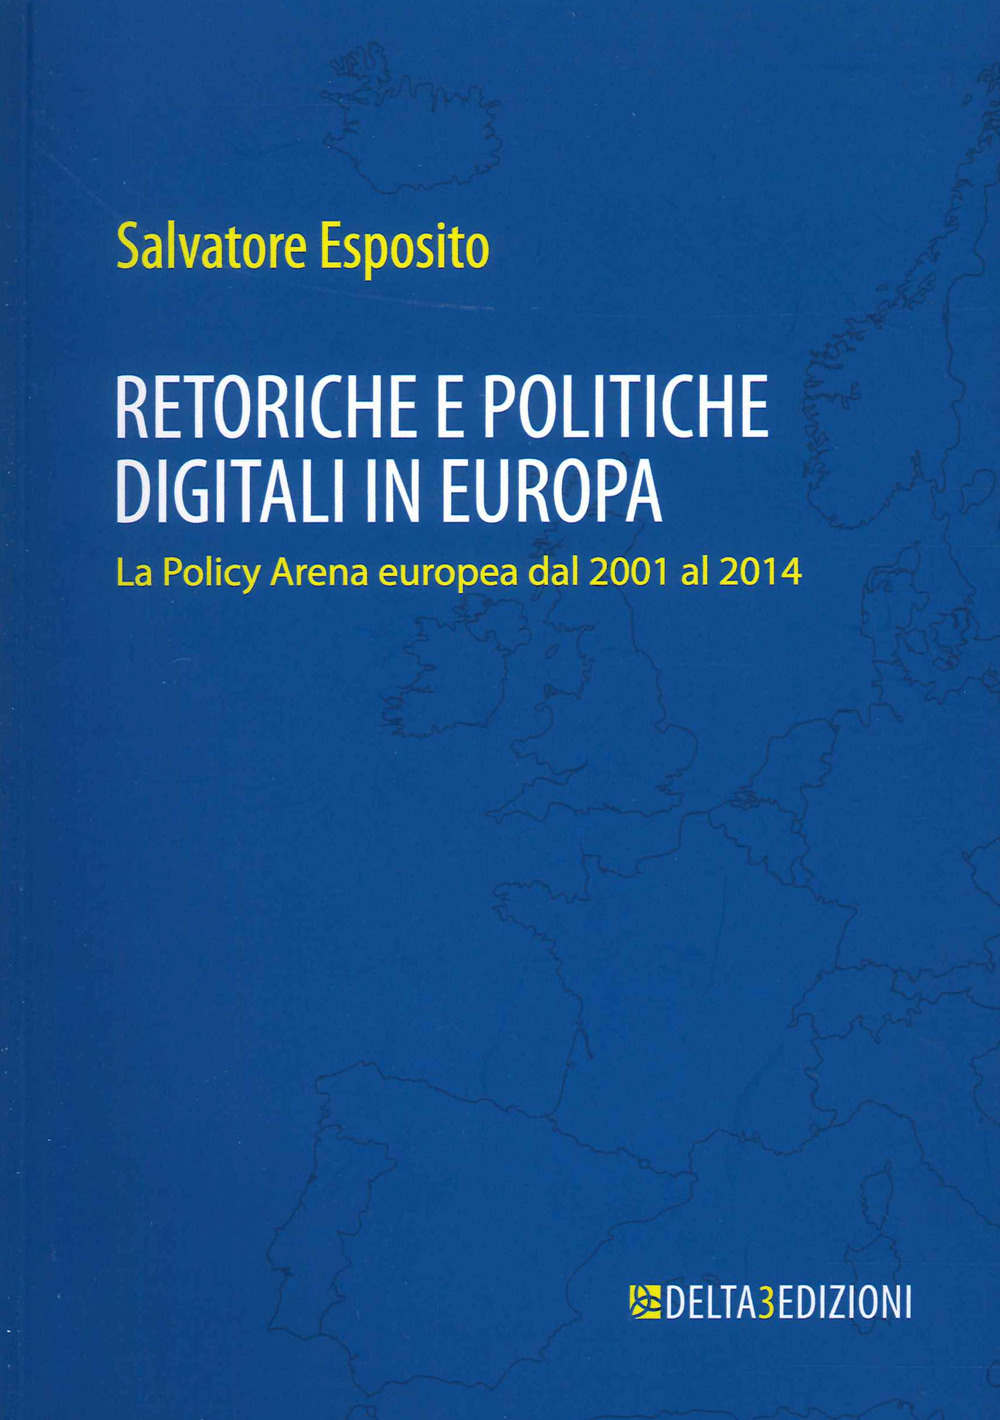 Retoriche e politiche digitali in Europa. La Policy Arena europea dal 2001 al 2014